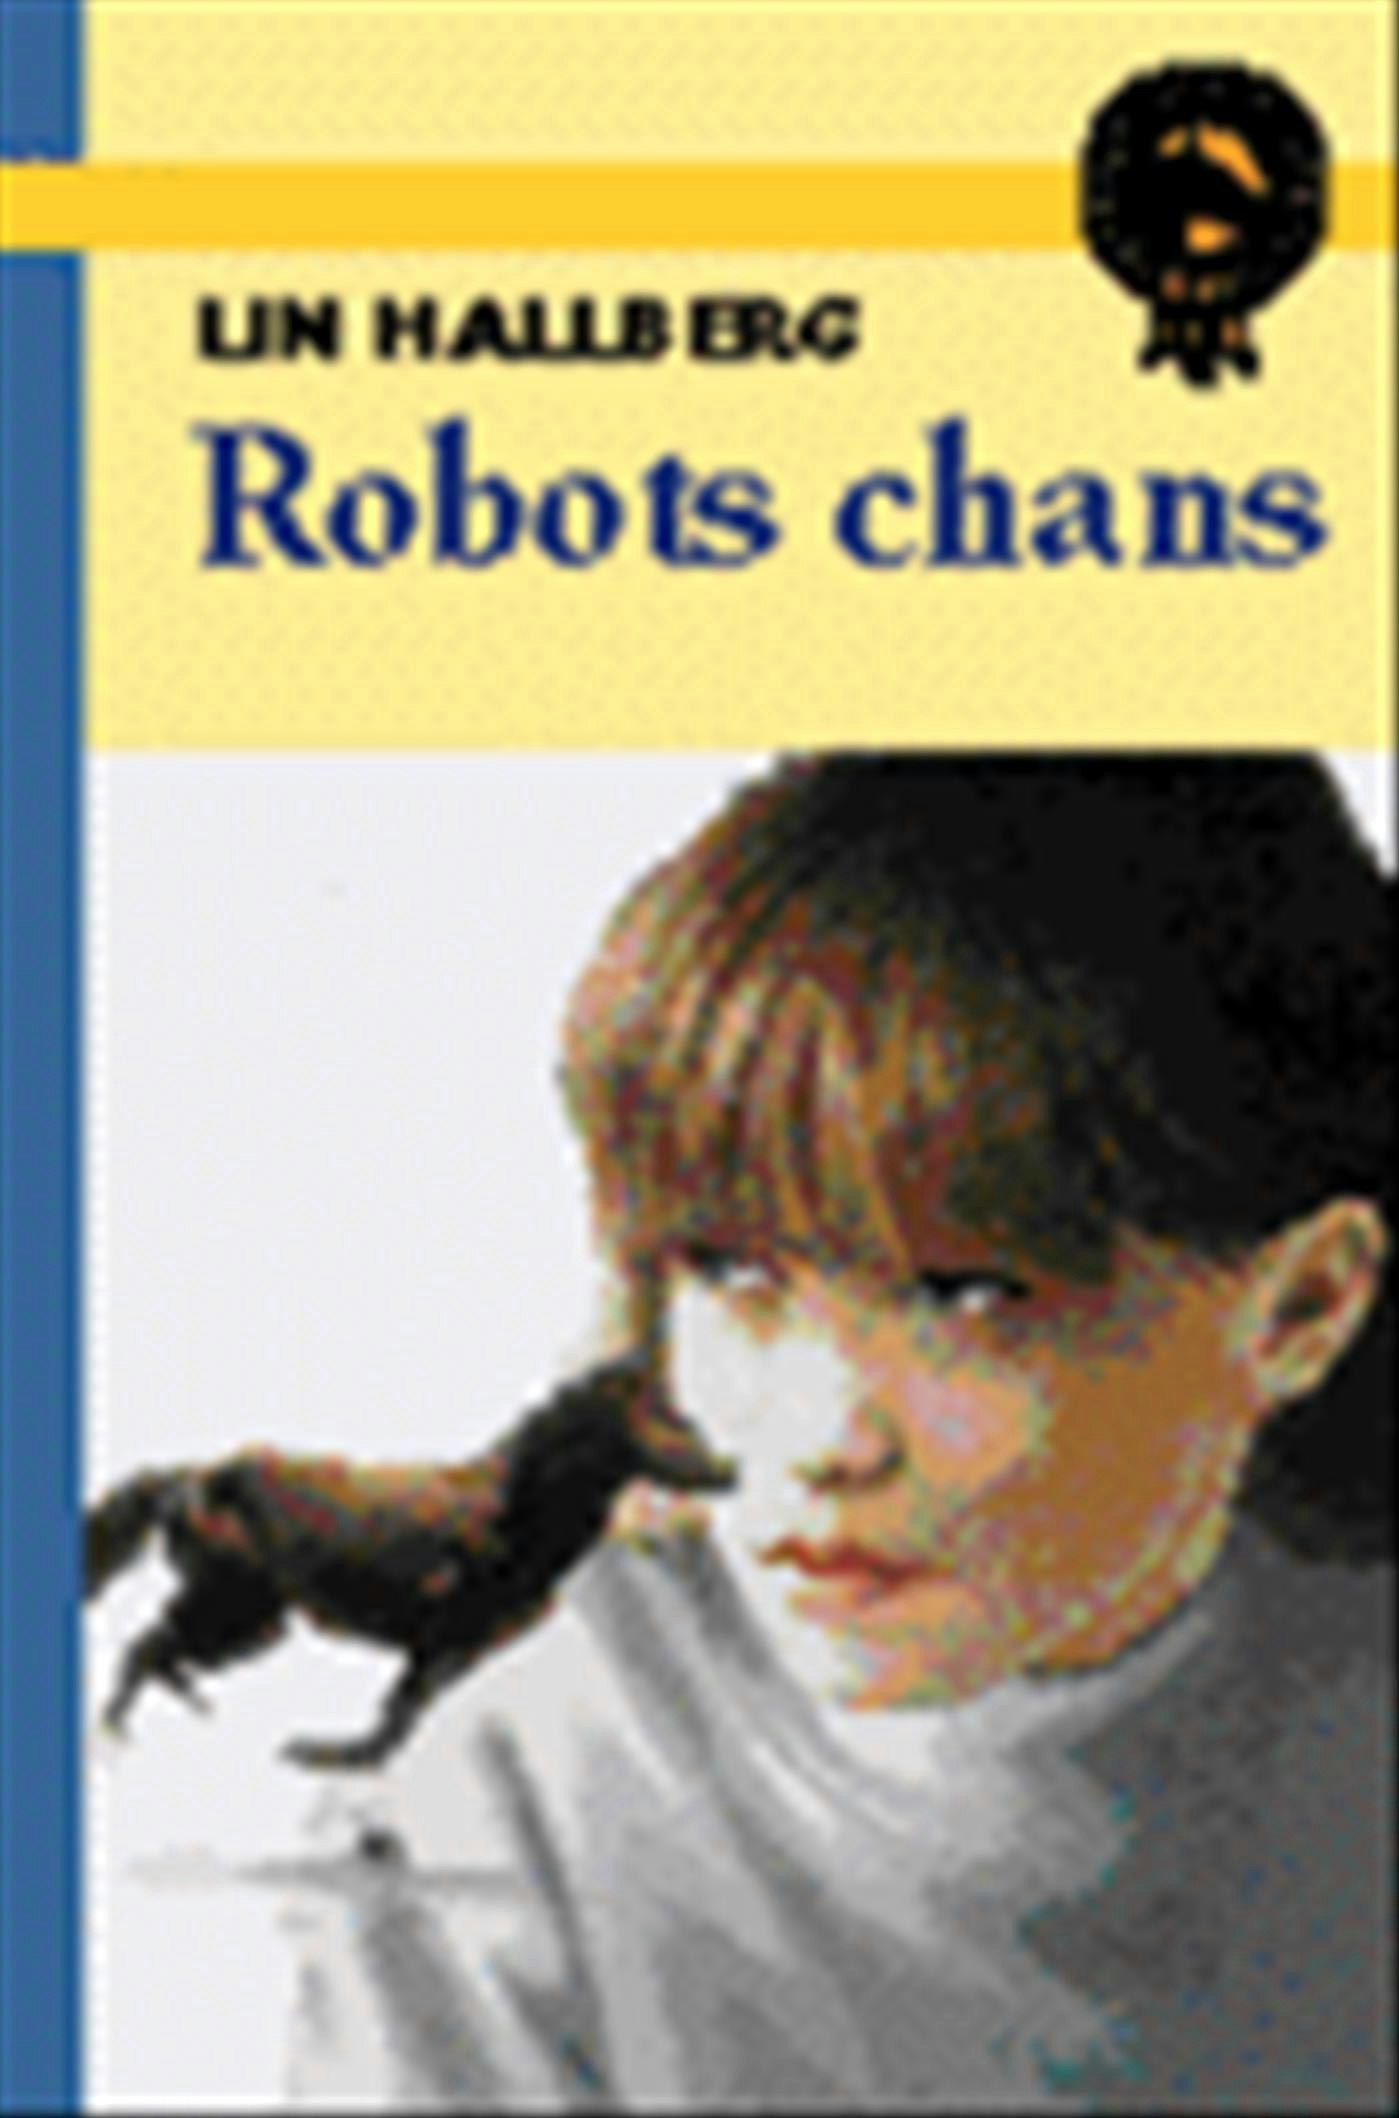 Robots chans